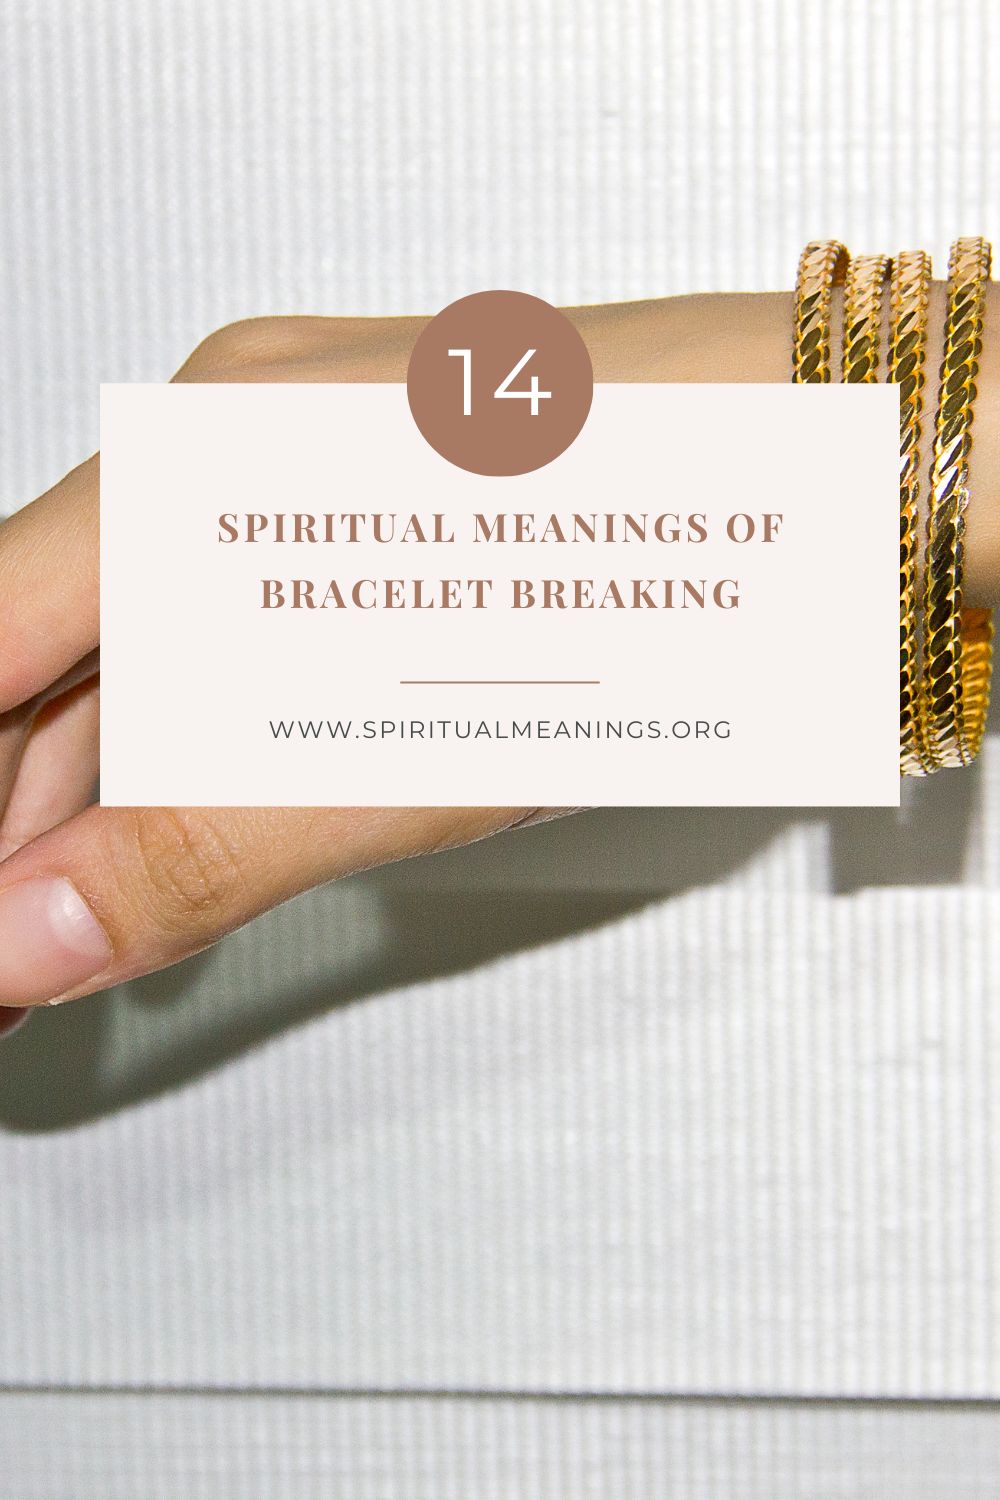 What does it mean when your bracelet breaks?